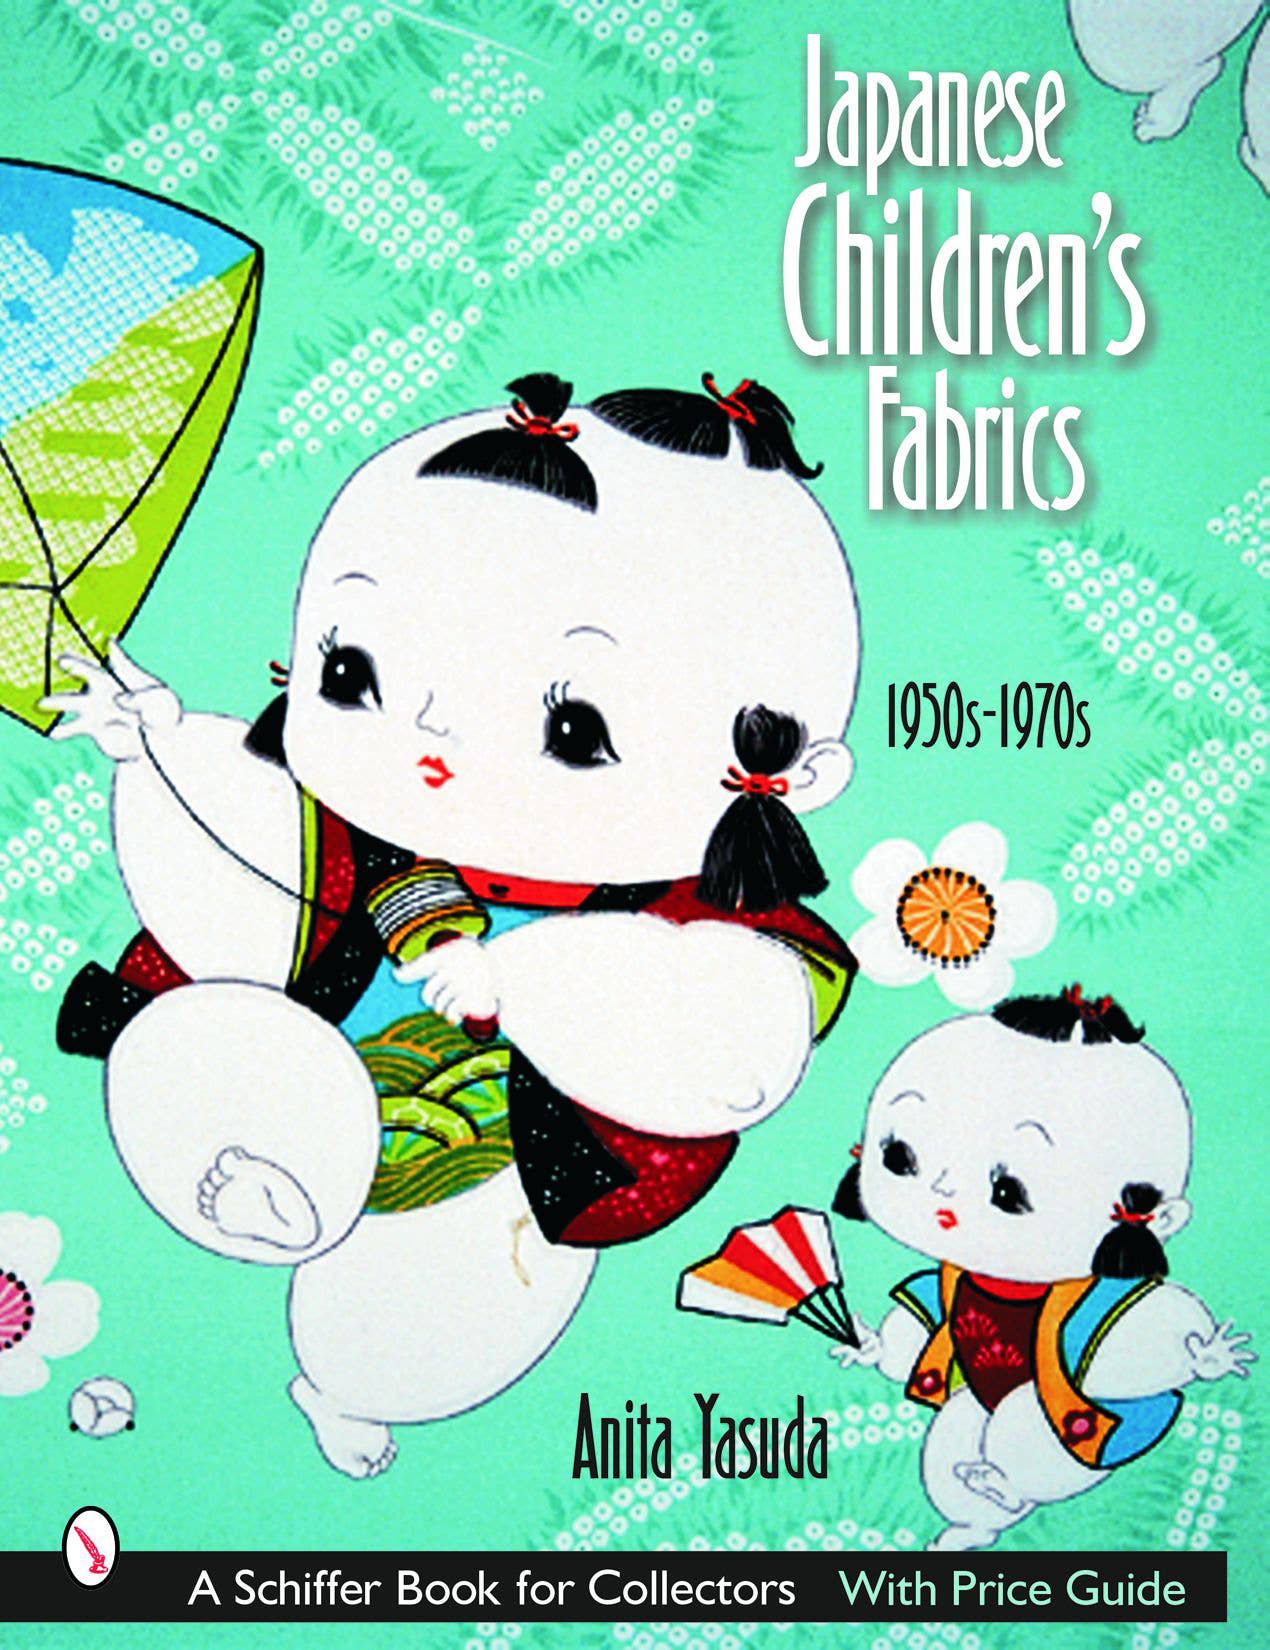 Japanese Children's Fabrics: 1950s-1970s